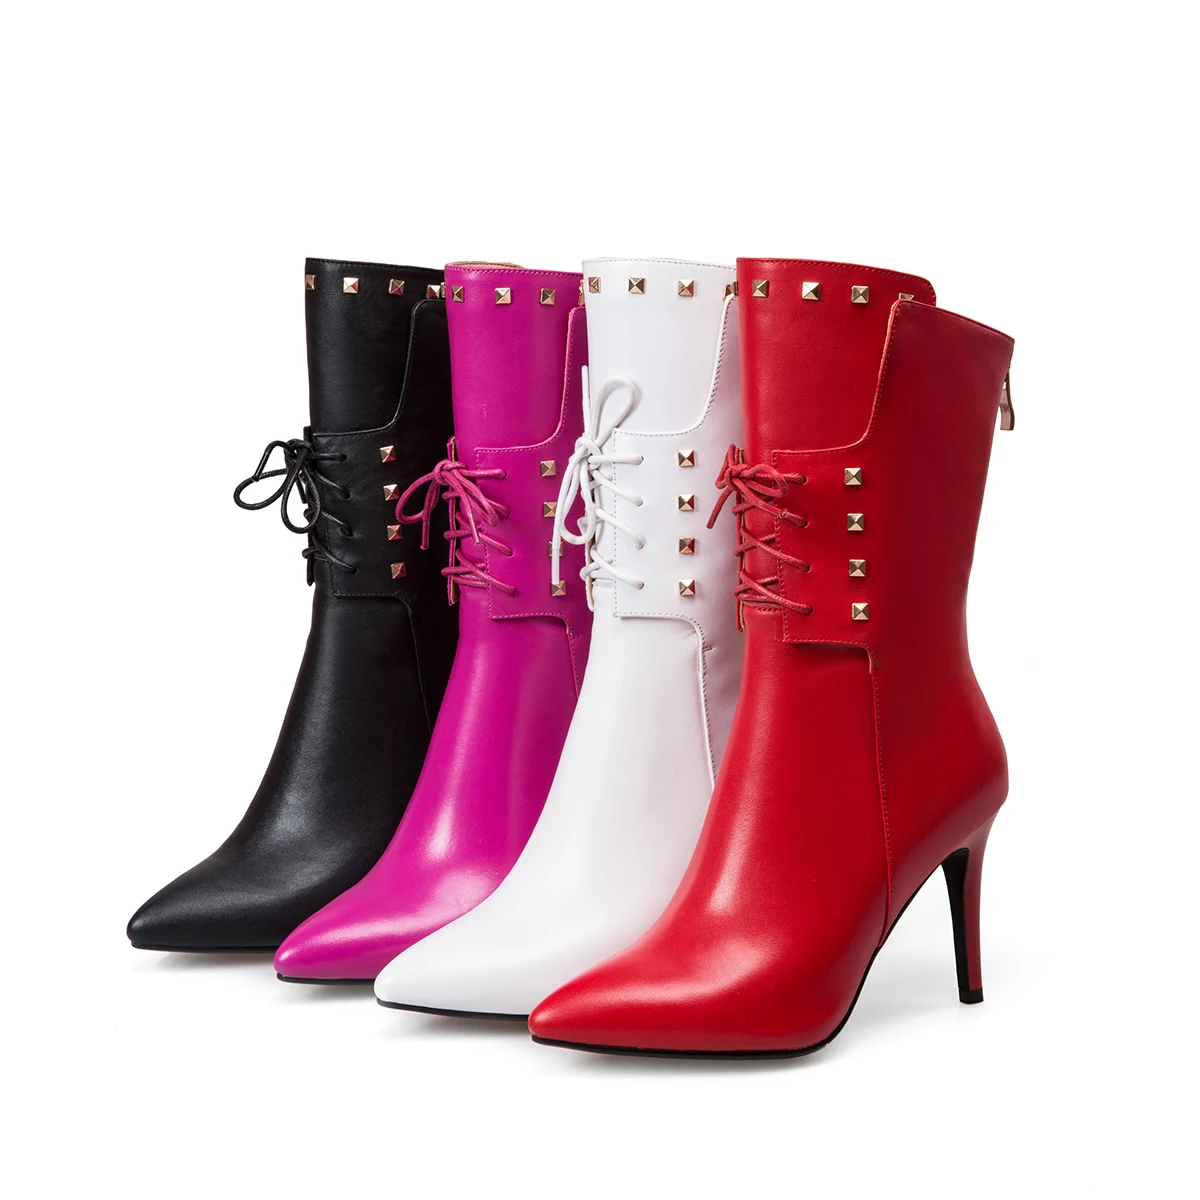 INS Mujeres CALIENTES botas de cuero natural superior plus tamaño 22-25cm botas de tobillo para las mujeres 3colors zapatos de Mujer de Metal del remache de la decoración 4